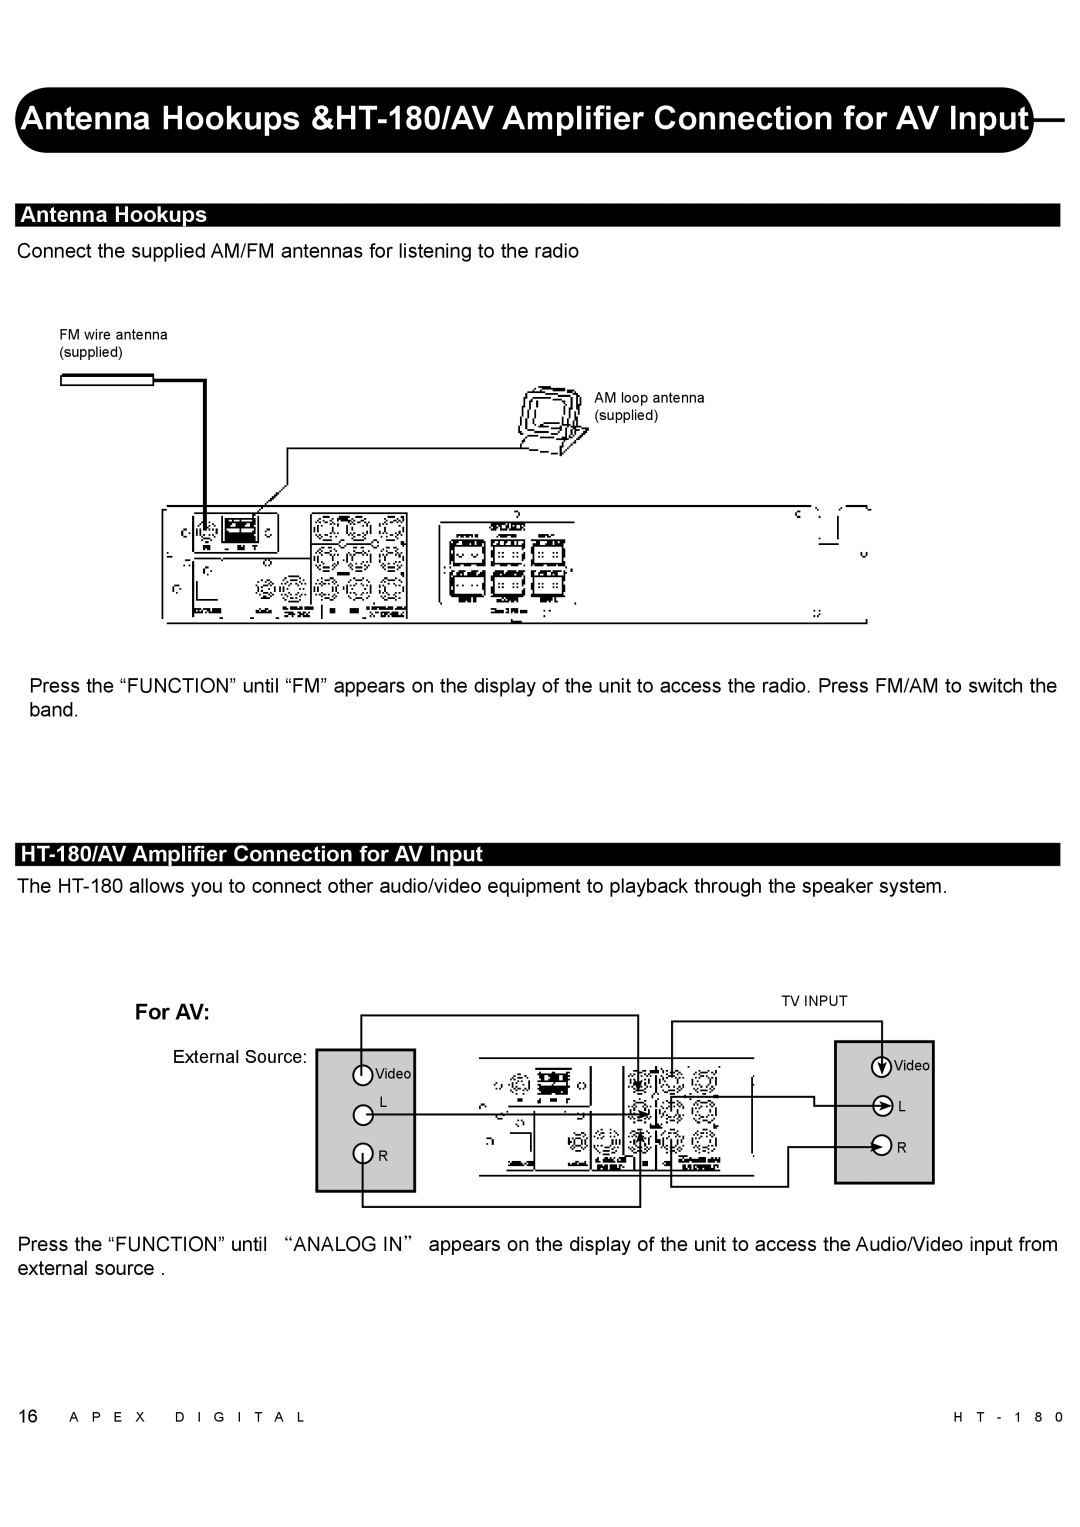 Apex Digital manual Antenna Hookups, HT-180/AVAmplifier Connection for AV Input, For AV 